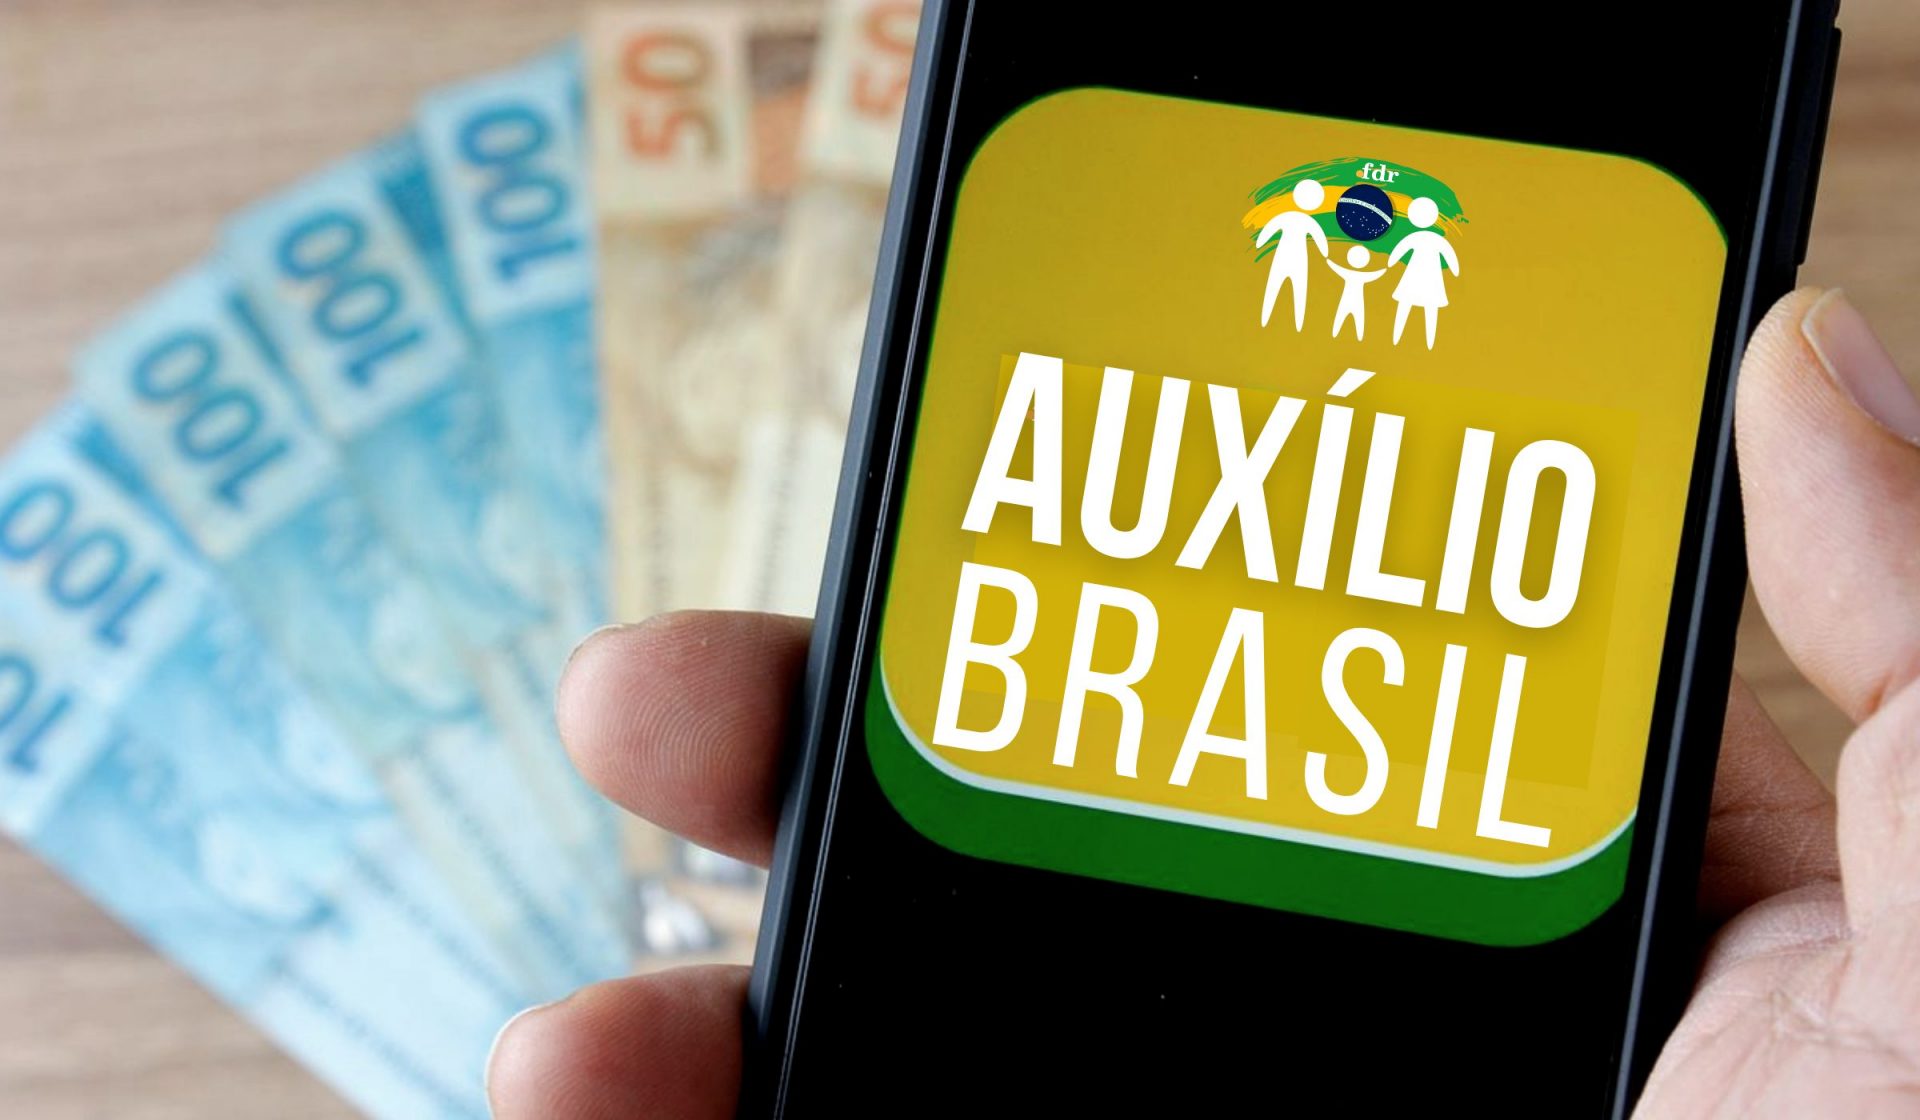 Imagem com logotipo alternativo do novo programa do governo federal, o Auxílio Brasil, feito pelo FDR